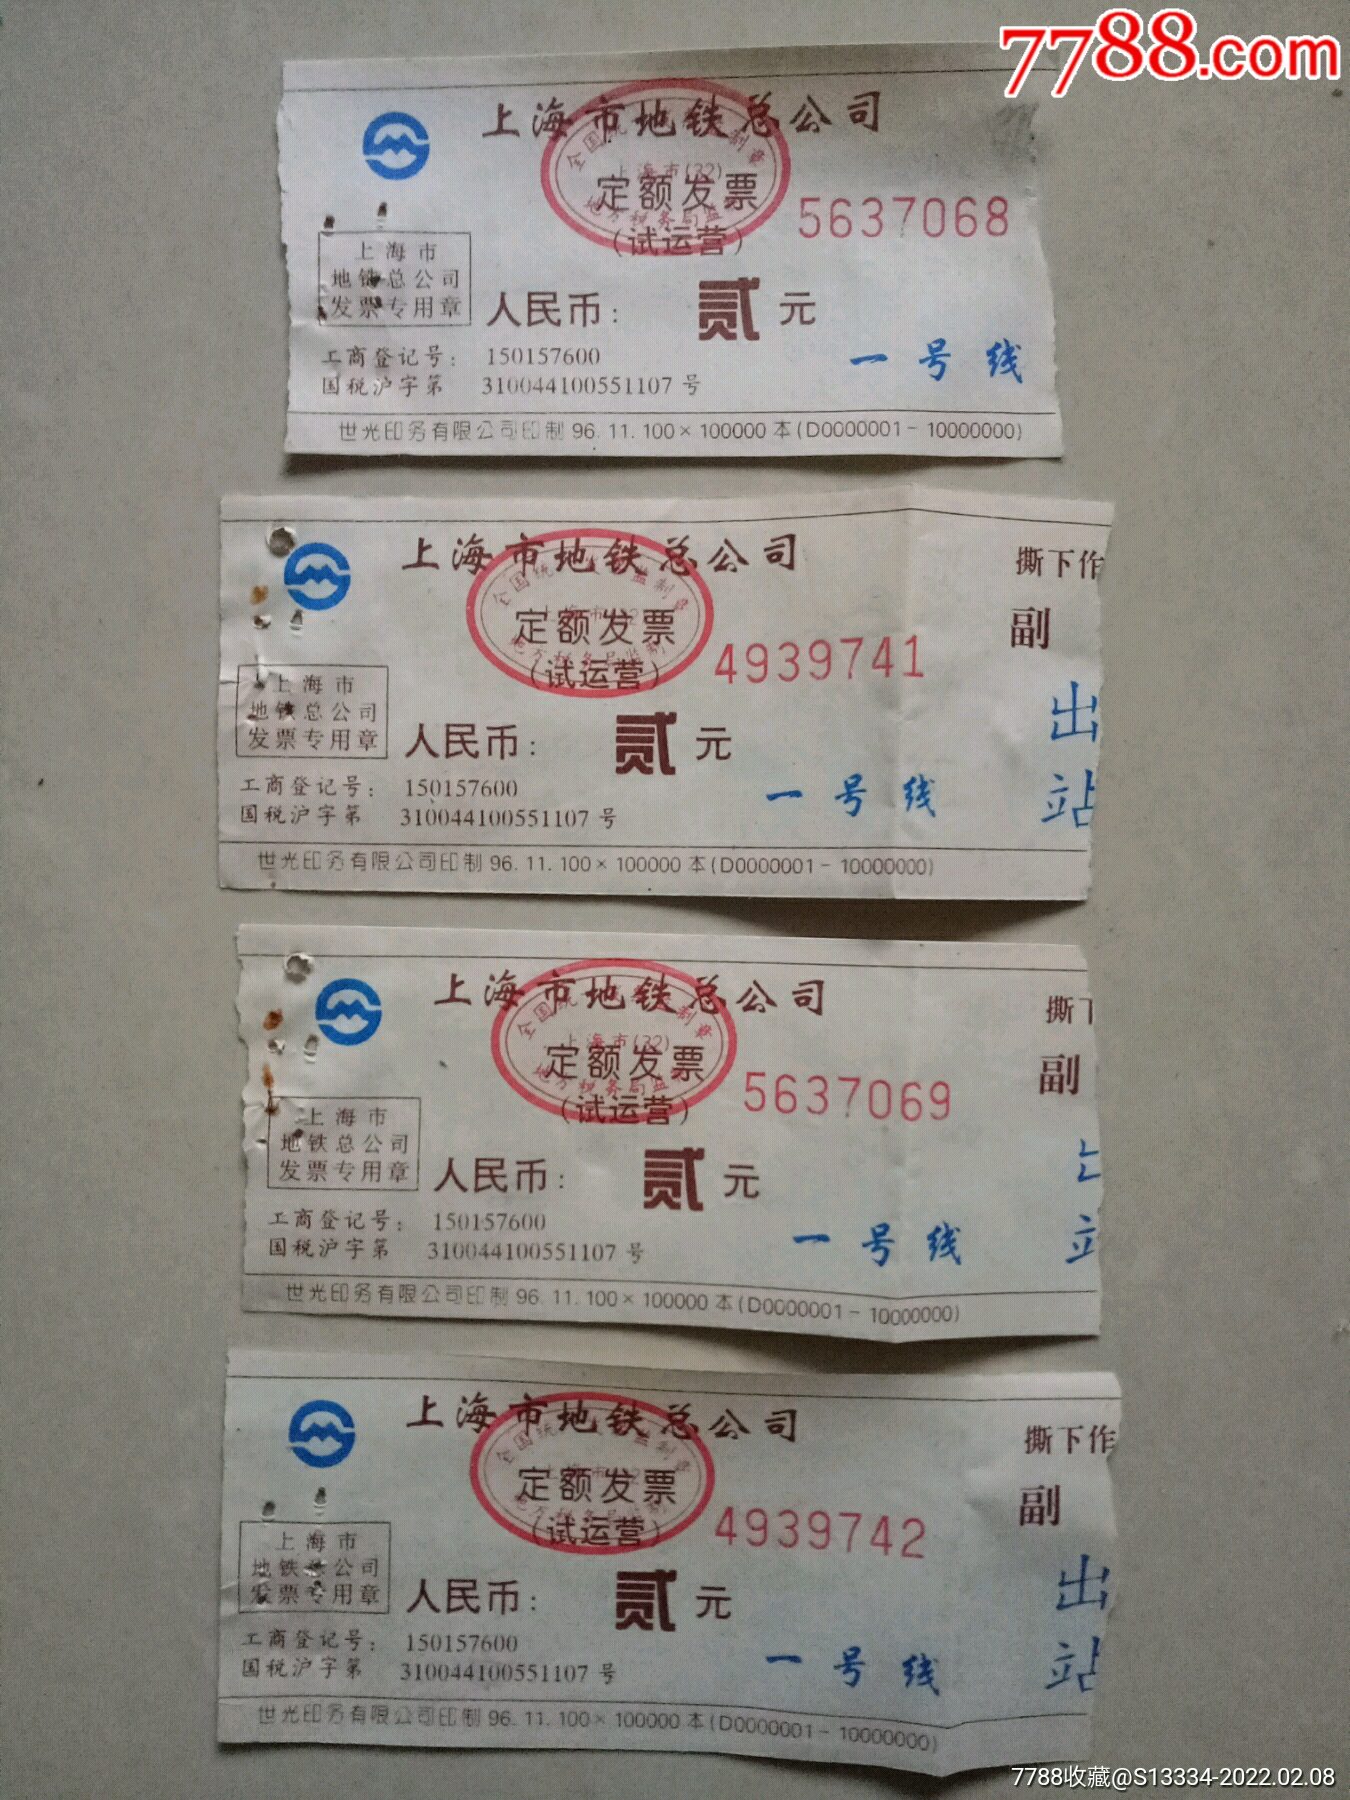 上海市地铁总公司定额发票试运营贰元一号线4枚